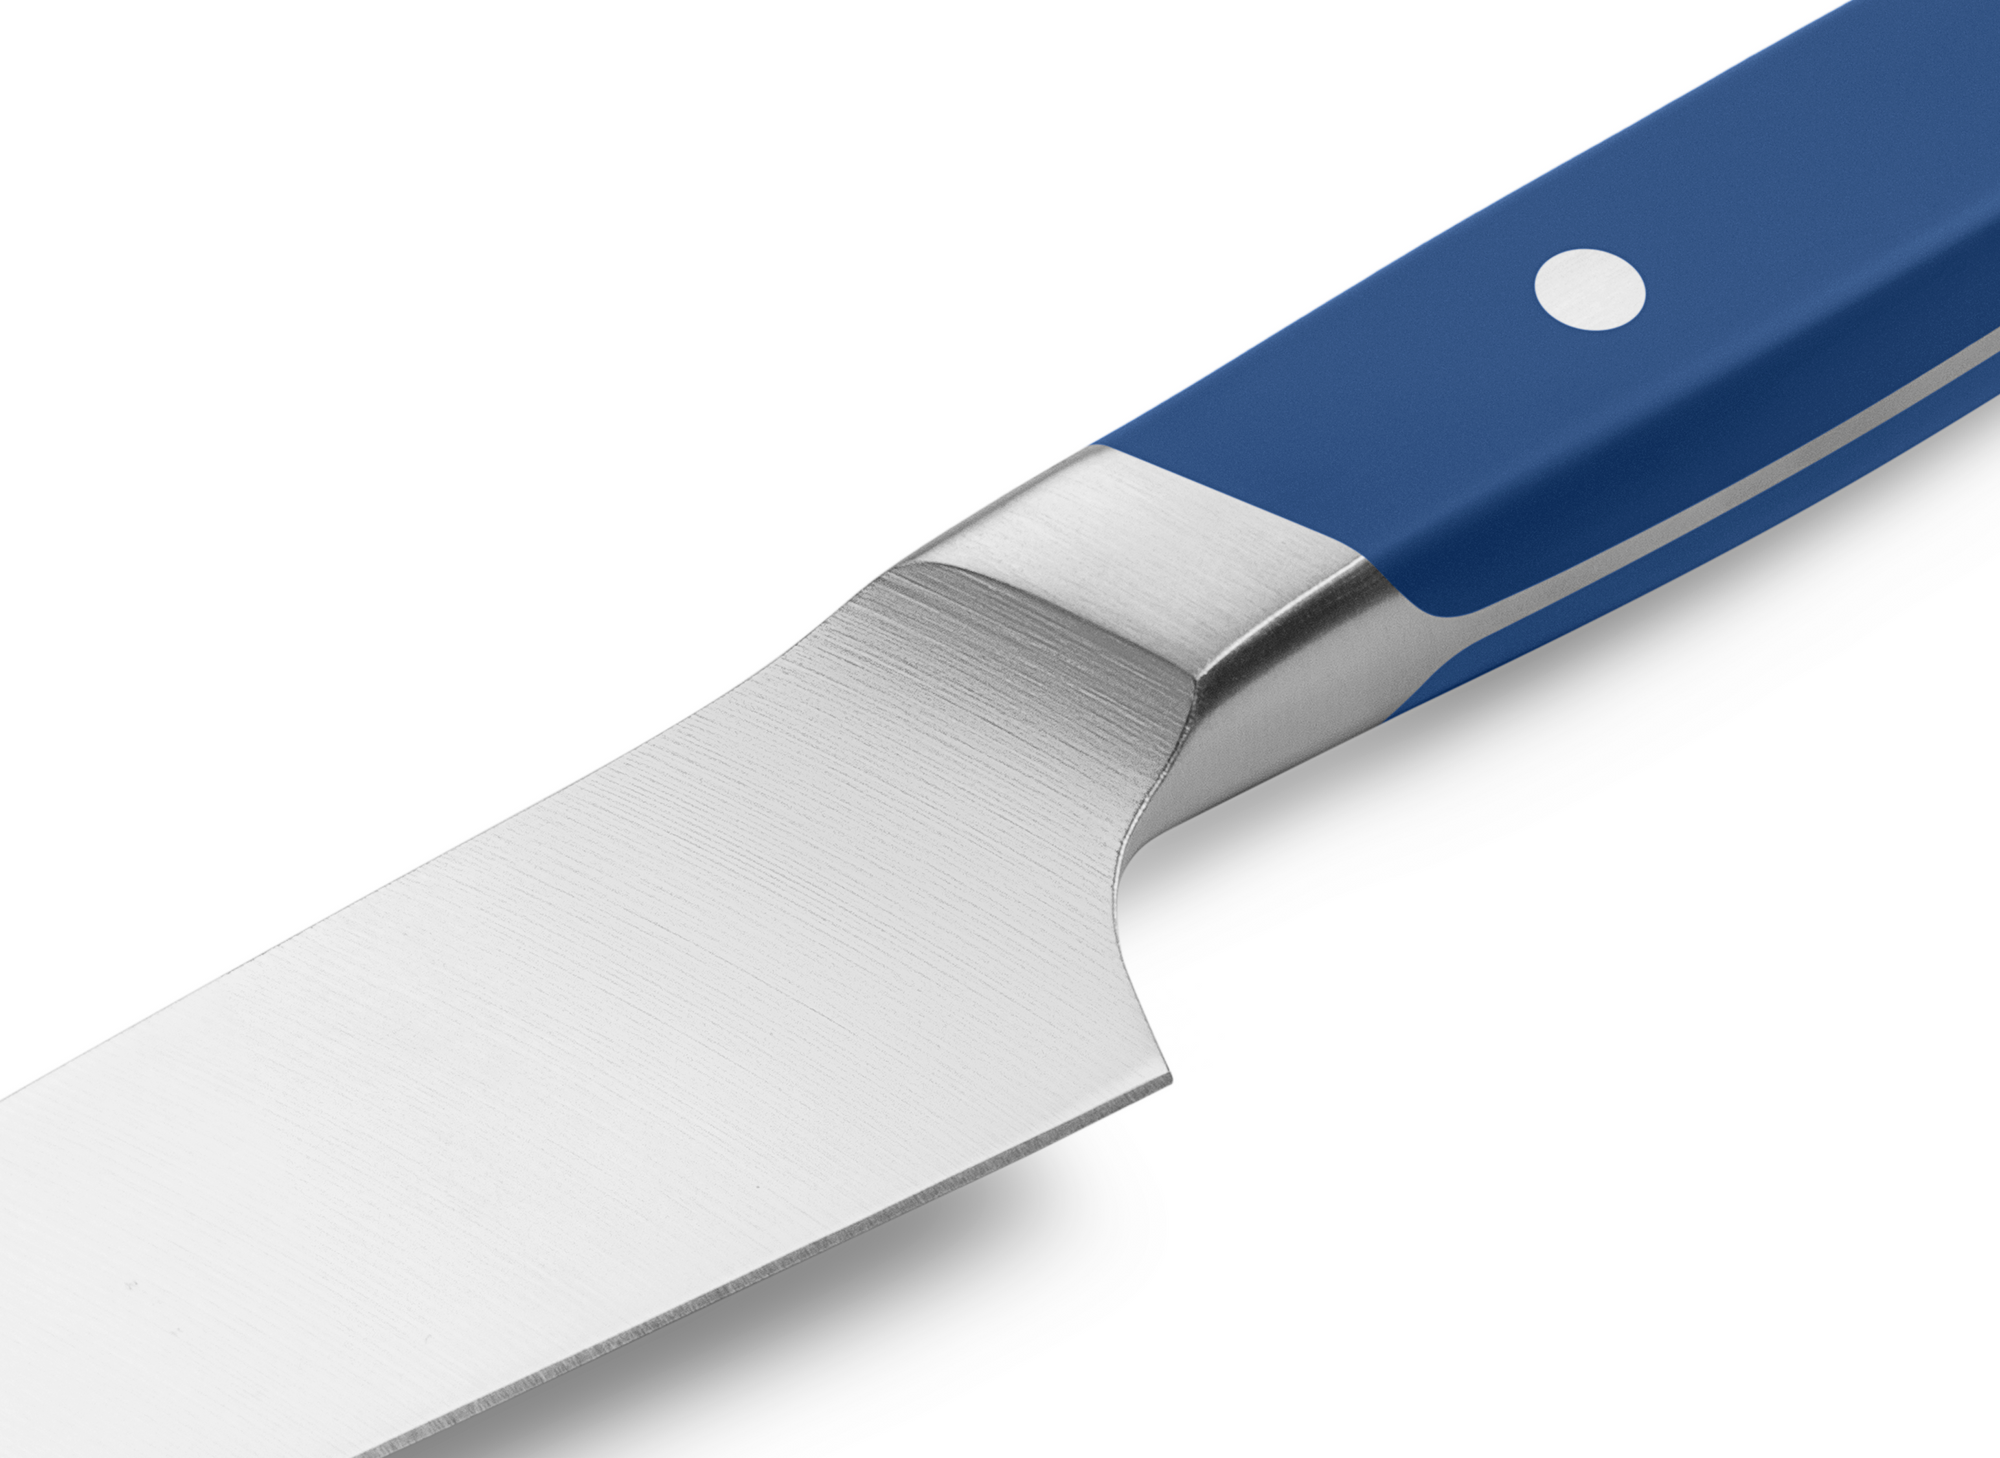 8 inch Chef Knife|Gunter Wilhelm